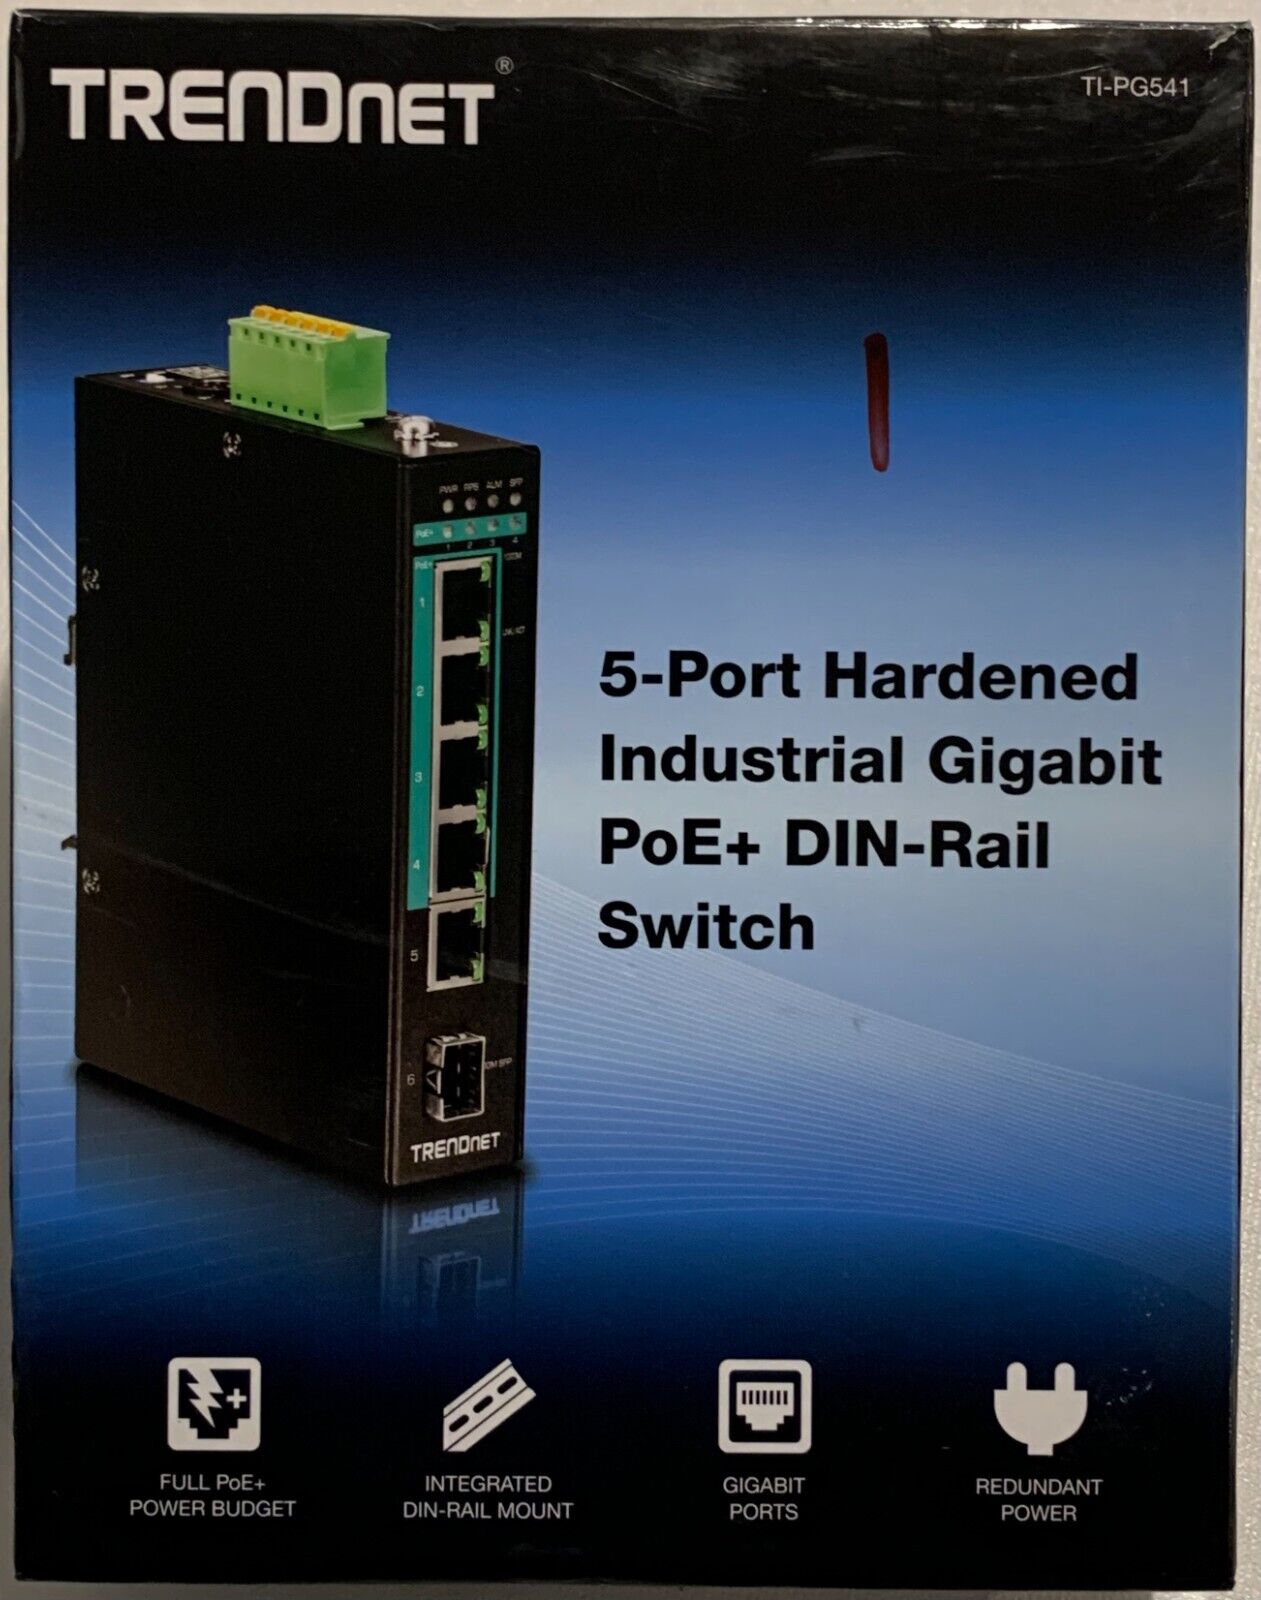 TRENDnet TI-PG541 5-Port Hardened Industrial Gigabit PoE+ DIN-Rail Switch